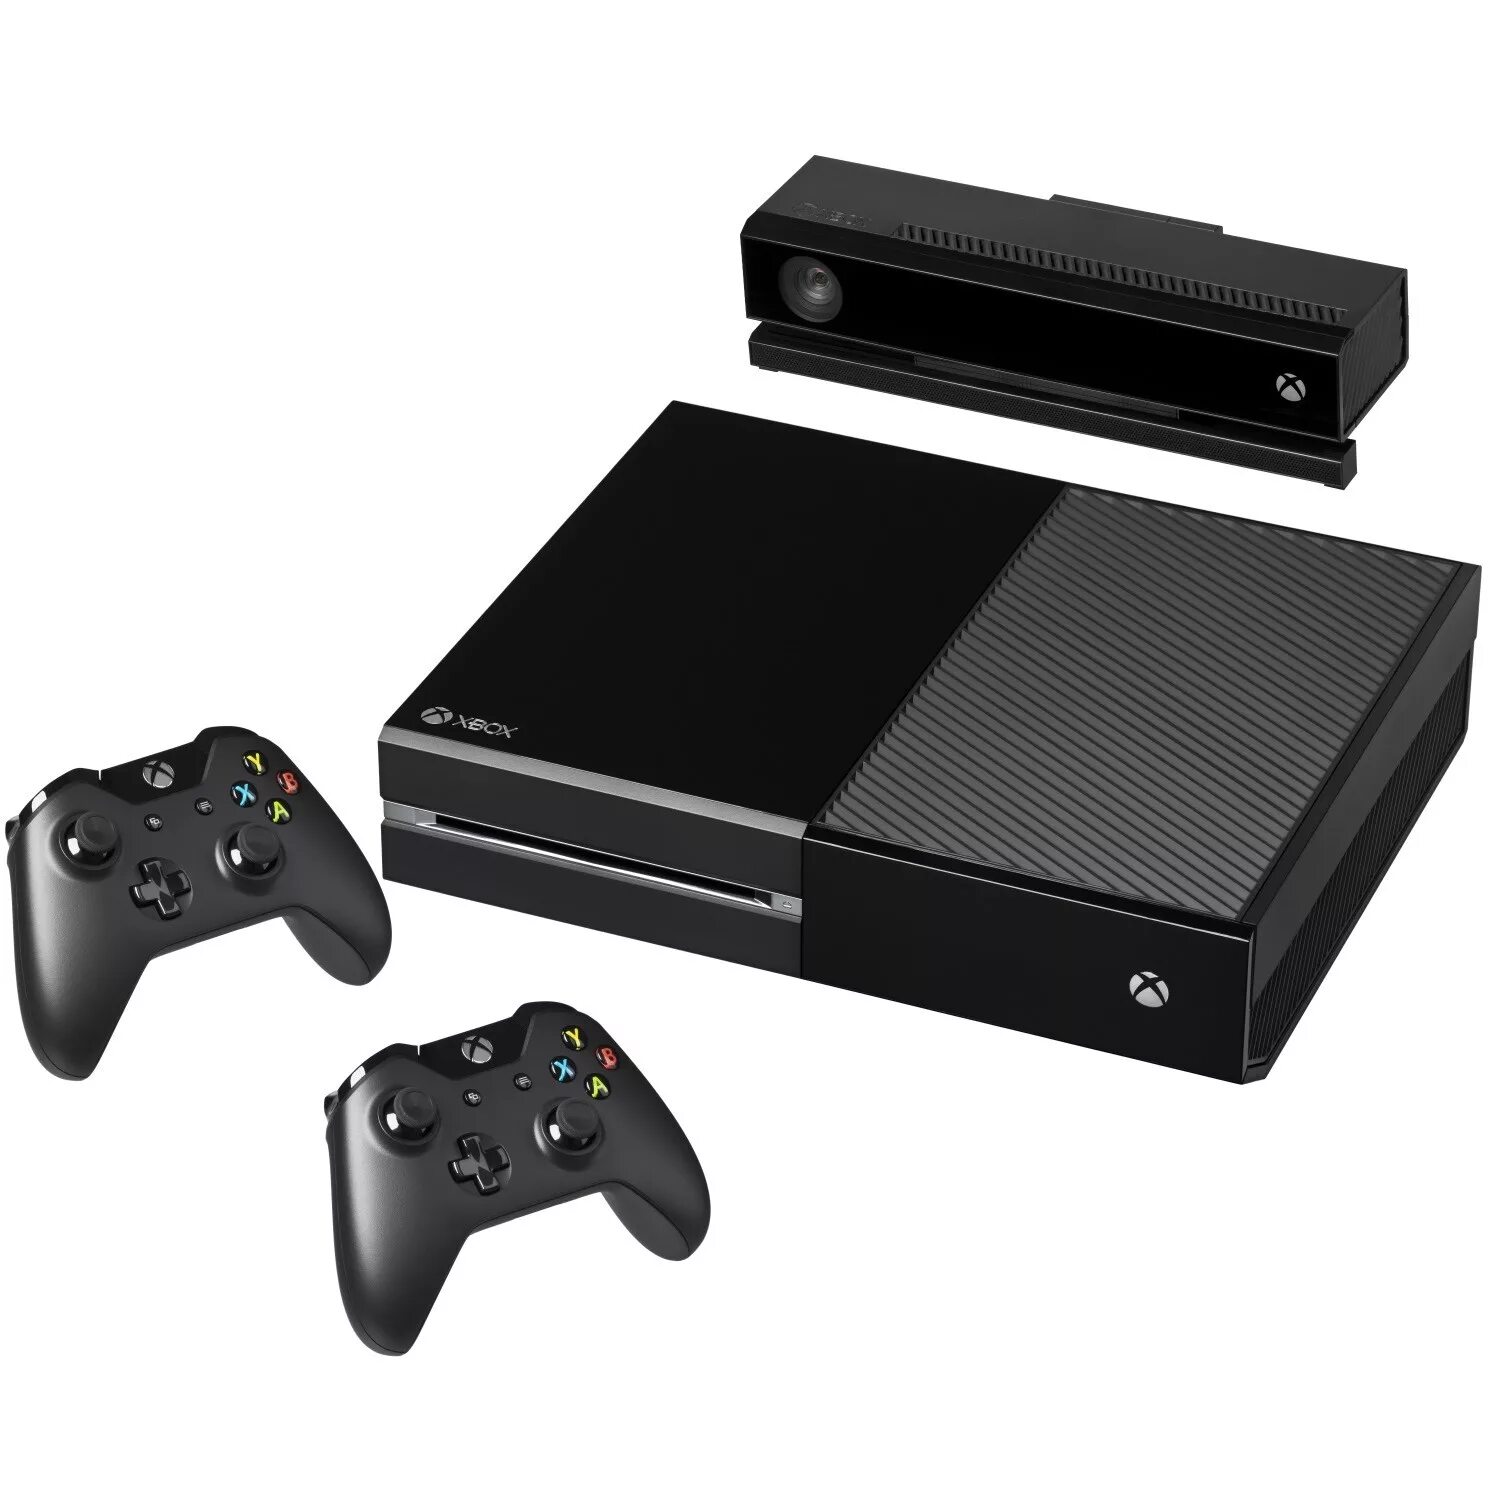 Xbox s черный. Игровая приставка Xbox one 500gb. Xbox one 2013. Игровая приставка Microsoft Xbox one + Kinect 2.0 500 ГБ HDD, черный. Xbox one 1 поколения.